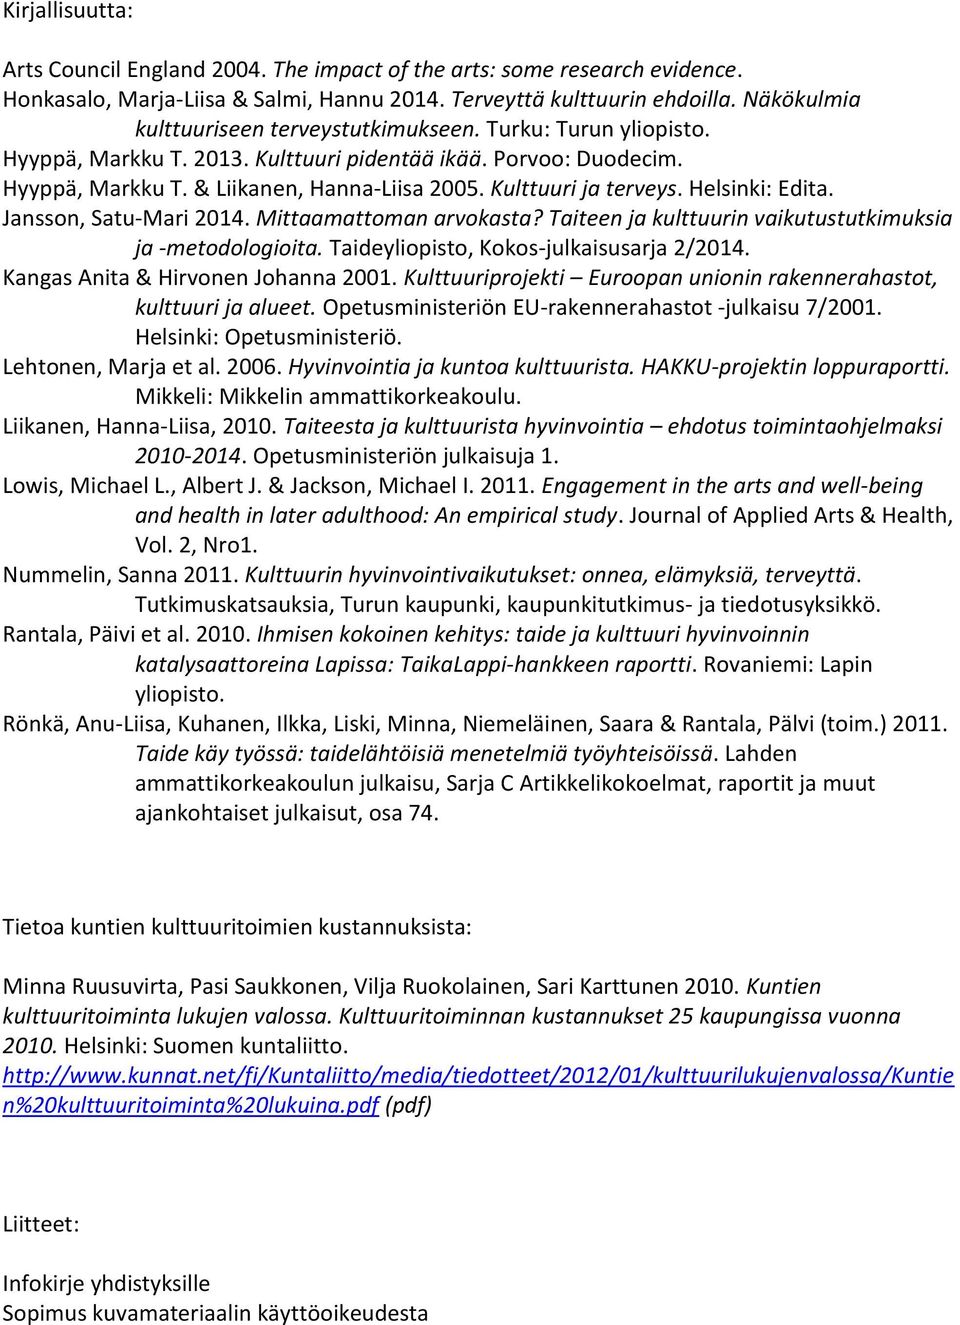 Kulttuuri ja terveys. Helsinki: Edita. Jansson, Satu-Mari 2014. Mittaamattoman arvokasta? Taiteen ja kulttuurin vaikutustutkimuksia ja -metodologioita. Taideyliopisto, Kokos-julkaisusarja 2/2014.